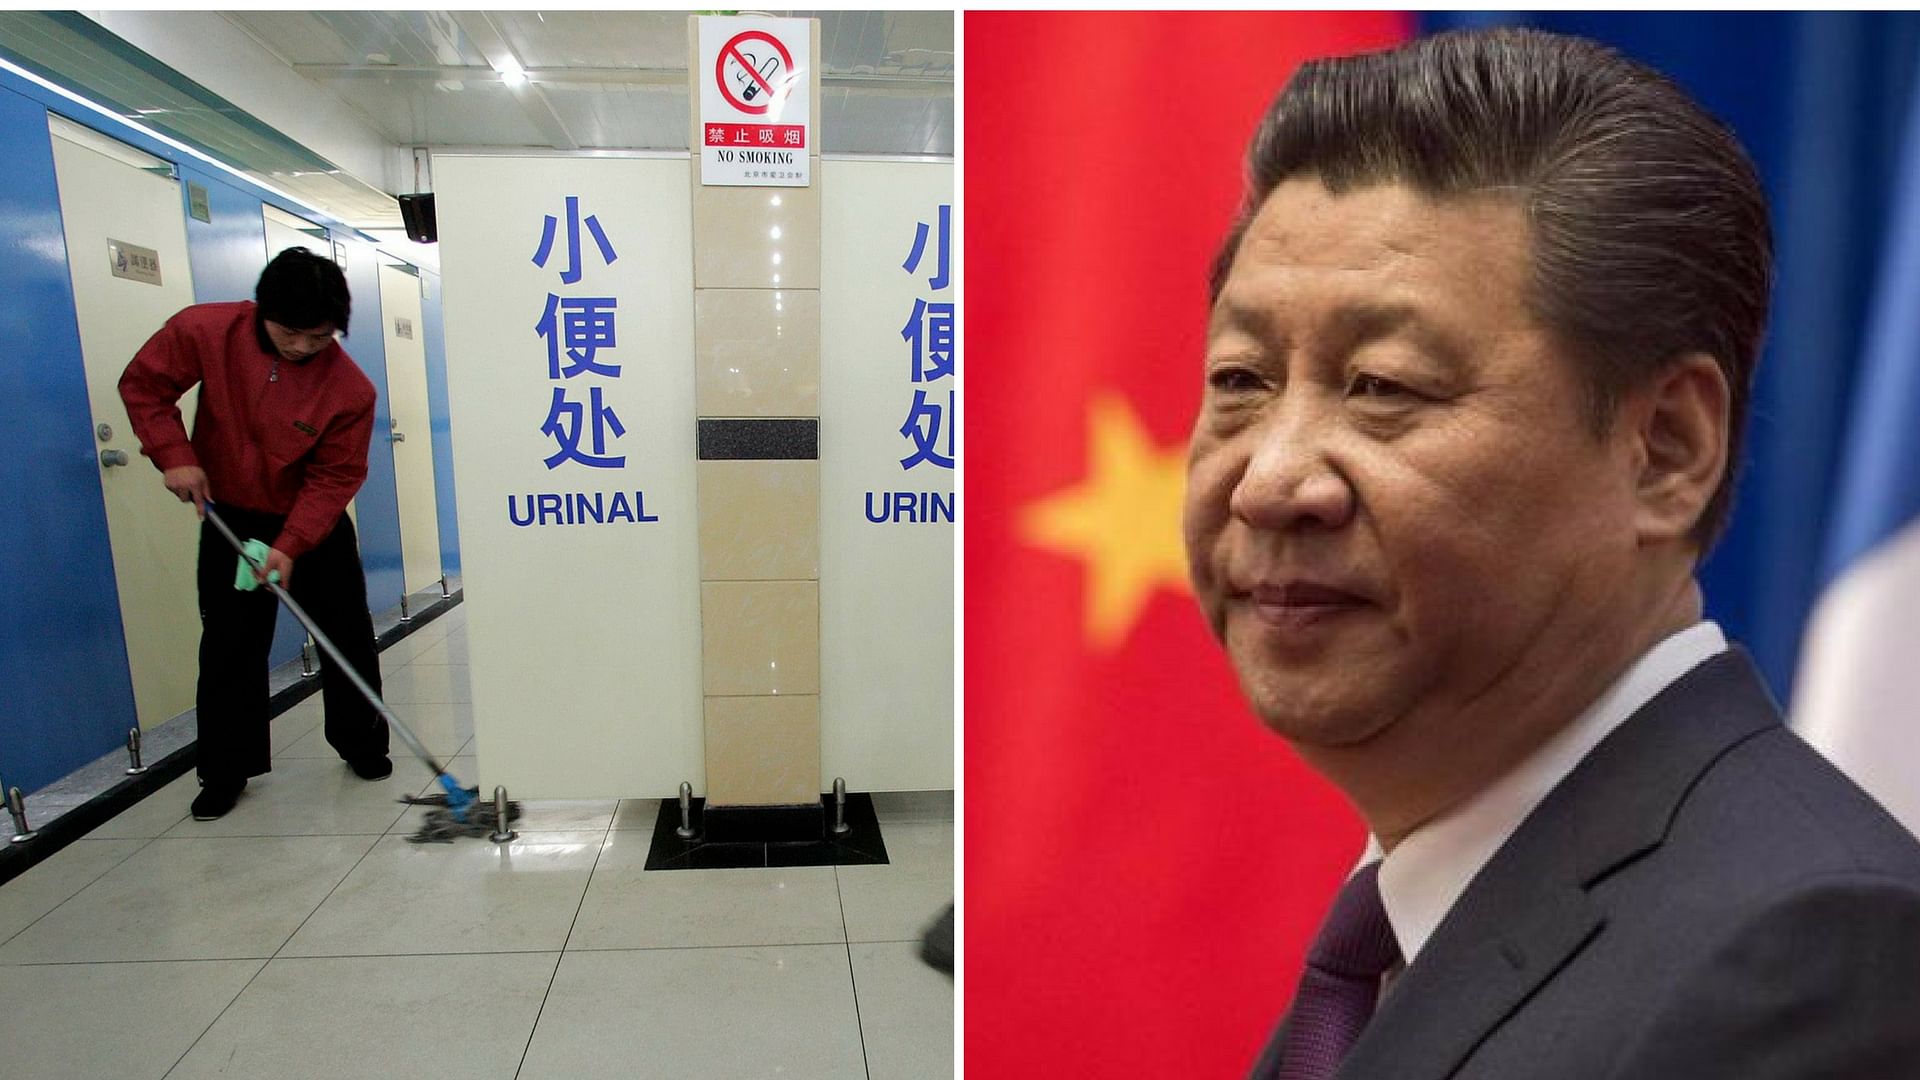 चीन ‘शौचालय क्रांति’ के साथ बेहतर सार्वजनिक सुविधाएं मुहैया करने की ओर तेजी से बढ़ रहा है